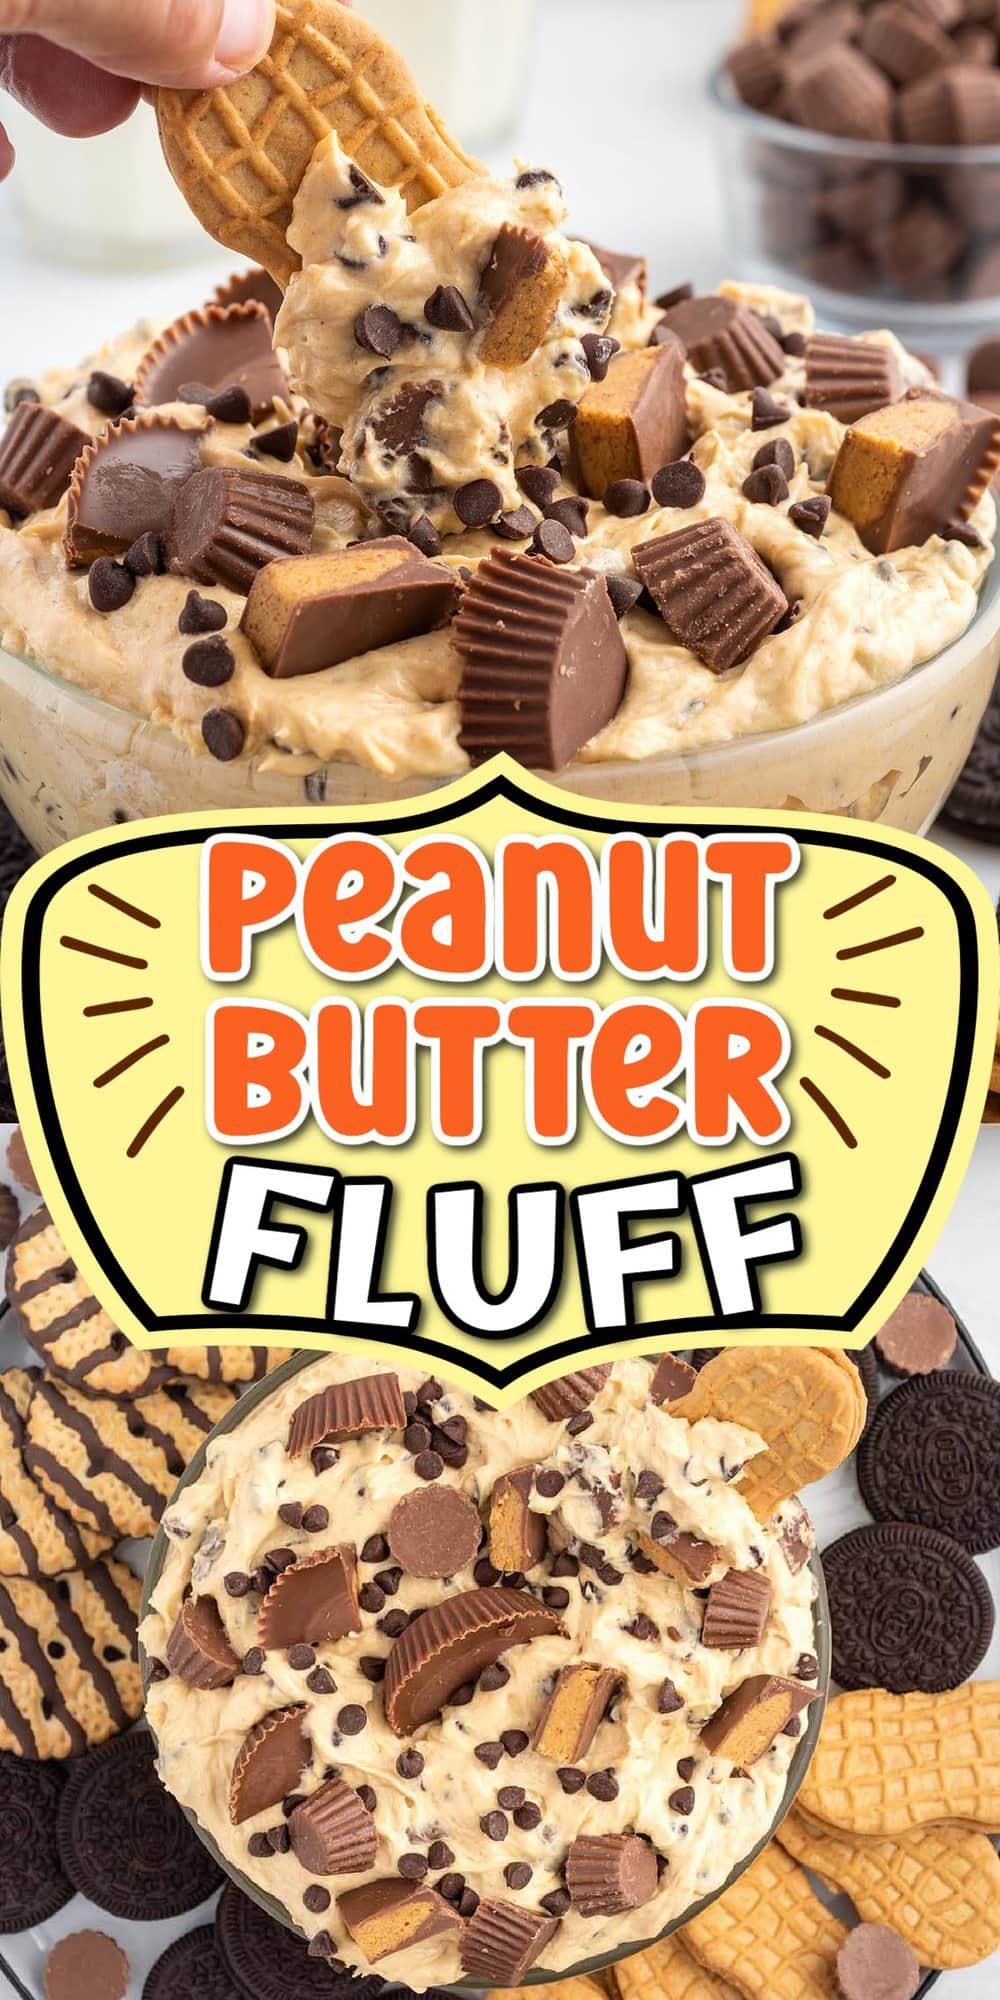 Peanut Butter Fluff pinterest